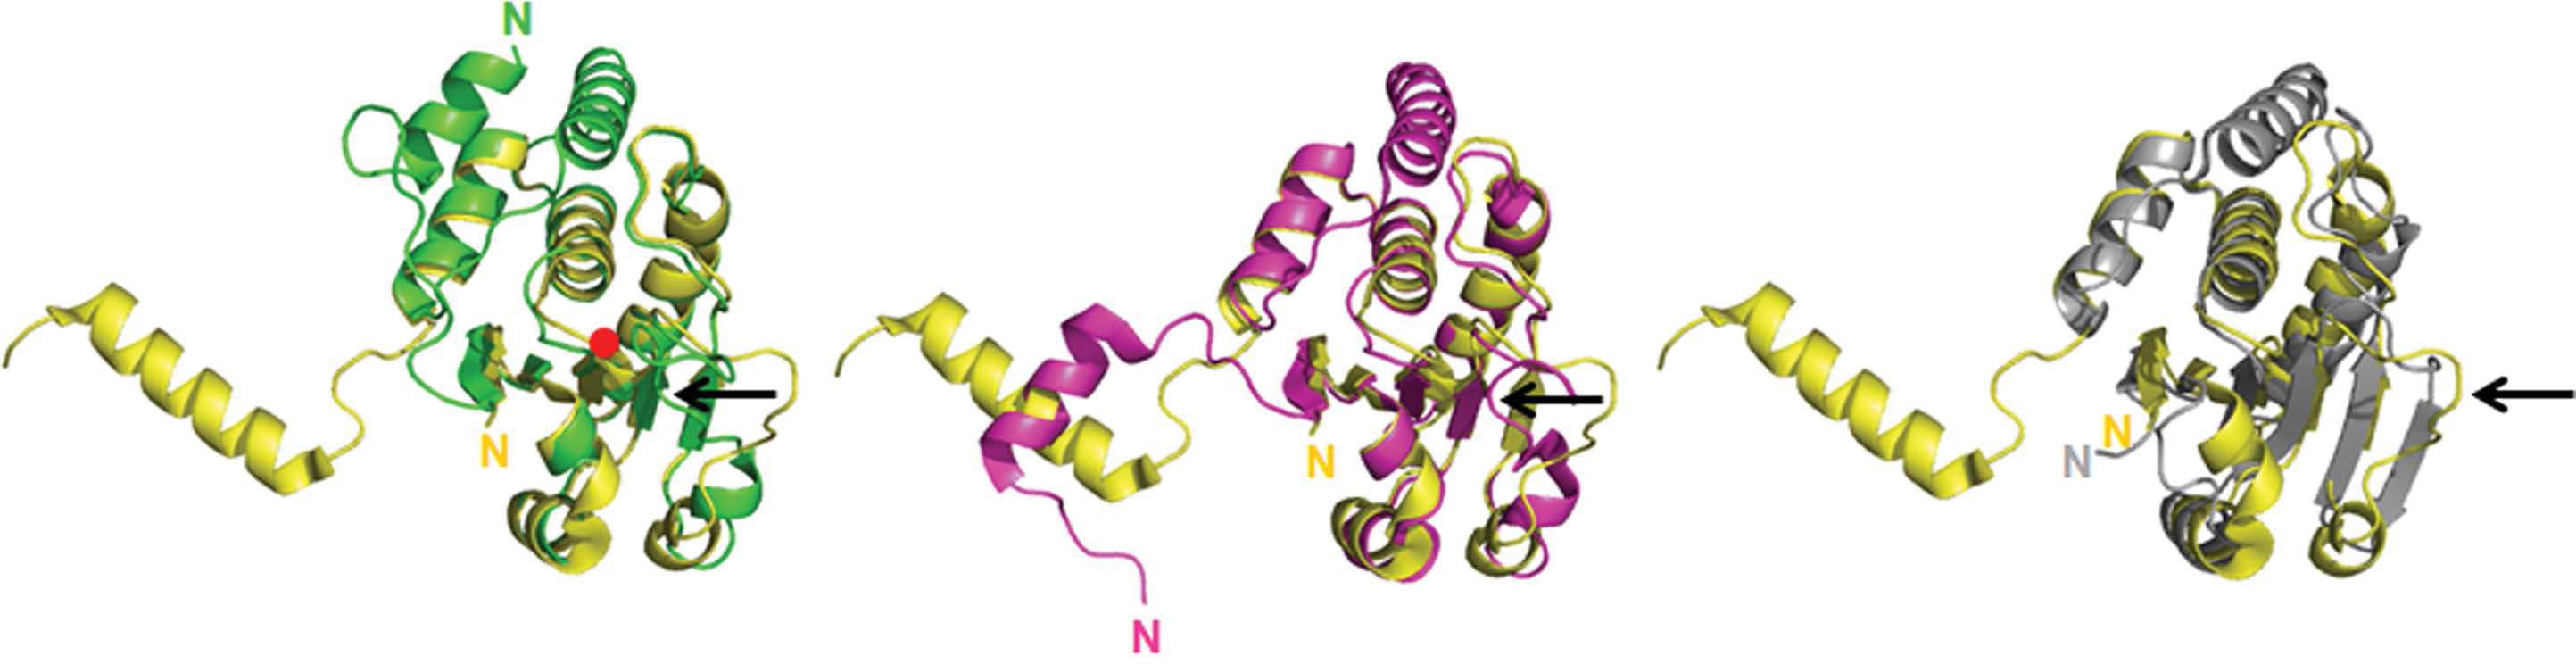 DUSP26-C(노랑)와 다른 DUSP 단백질(VHR:초록, DUSP27:보라, MKP-4:회색)과의 구조 비교